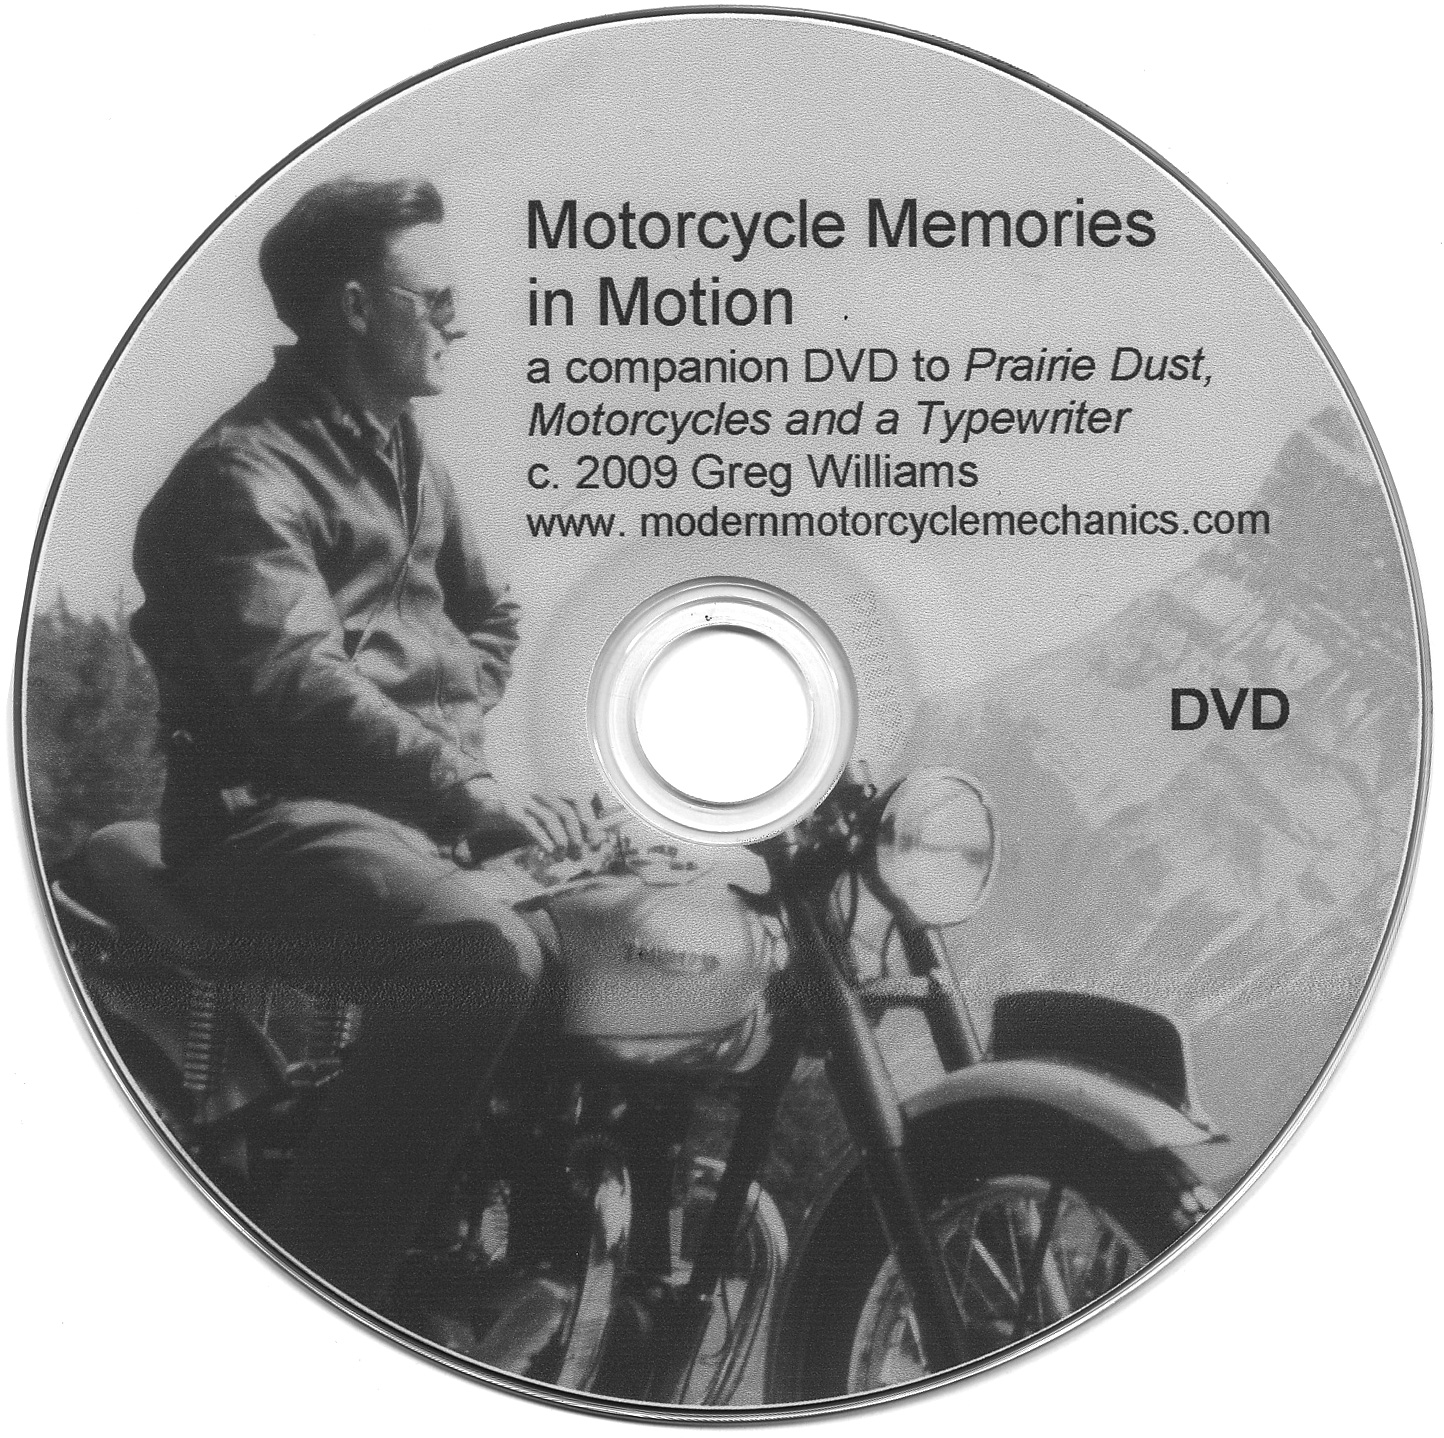 Motorcycle Memories in Motion DVD